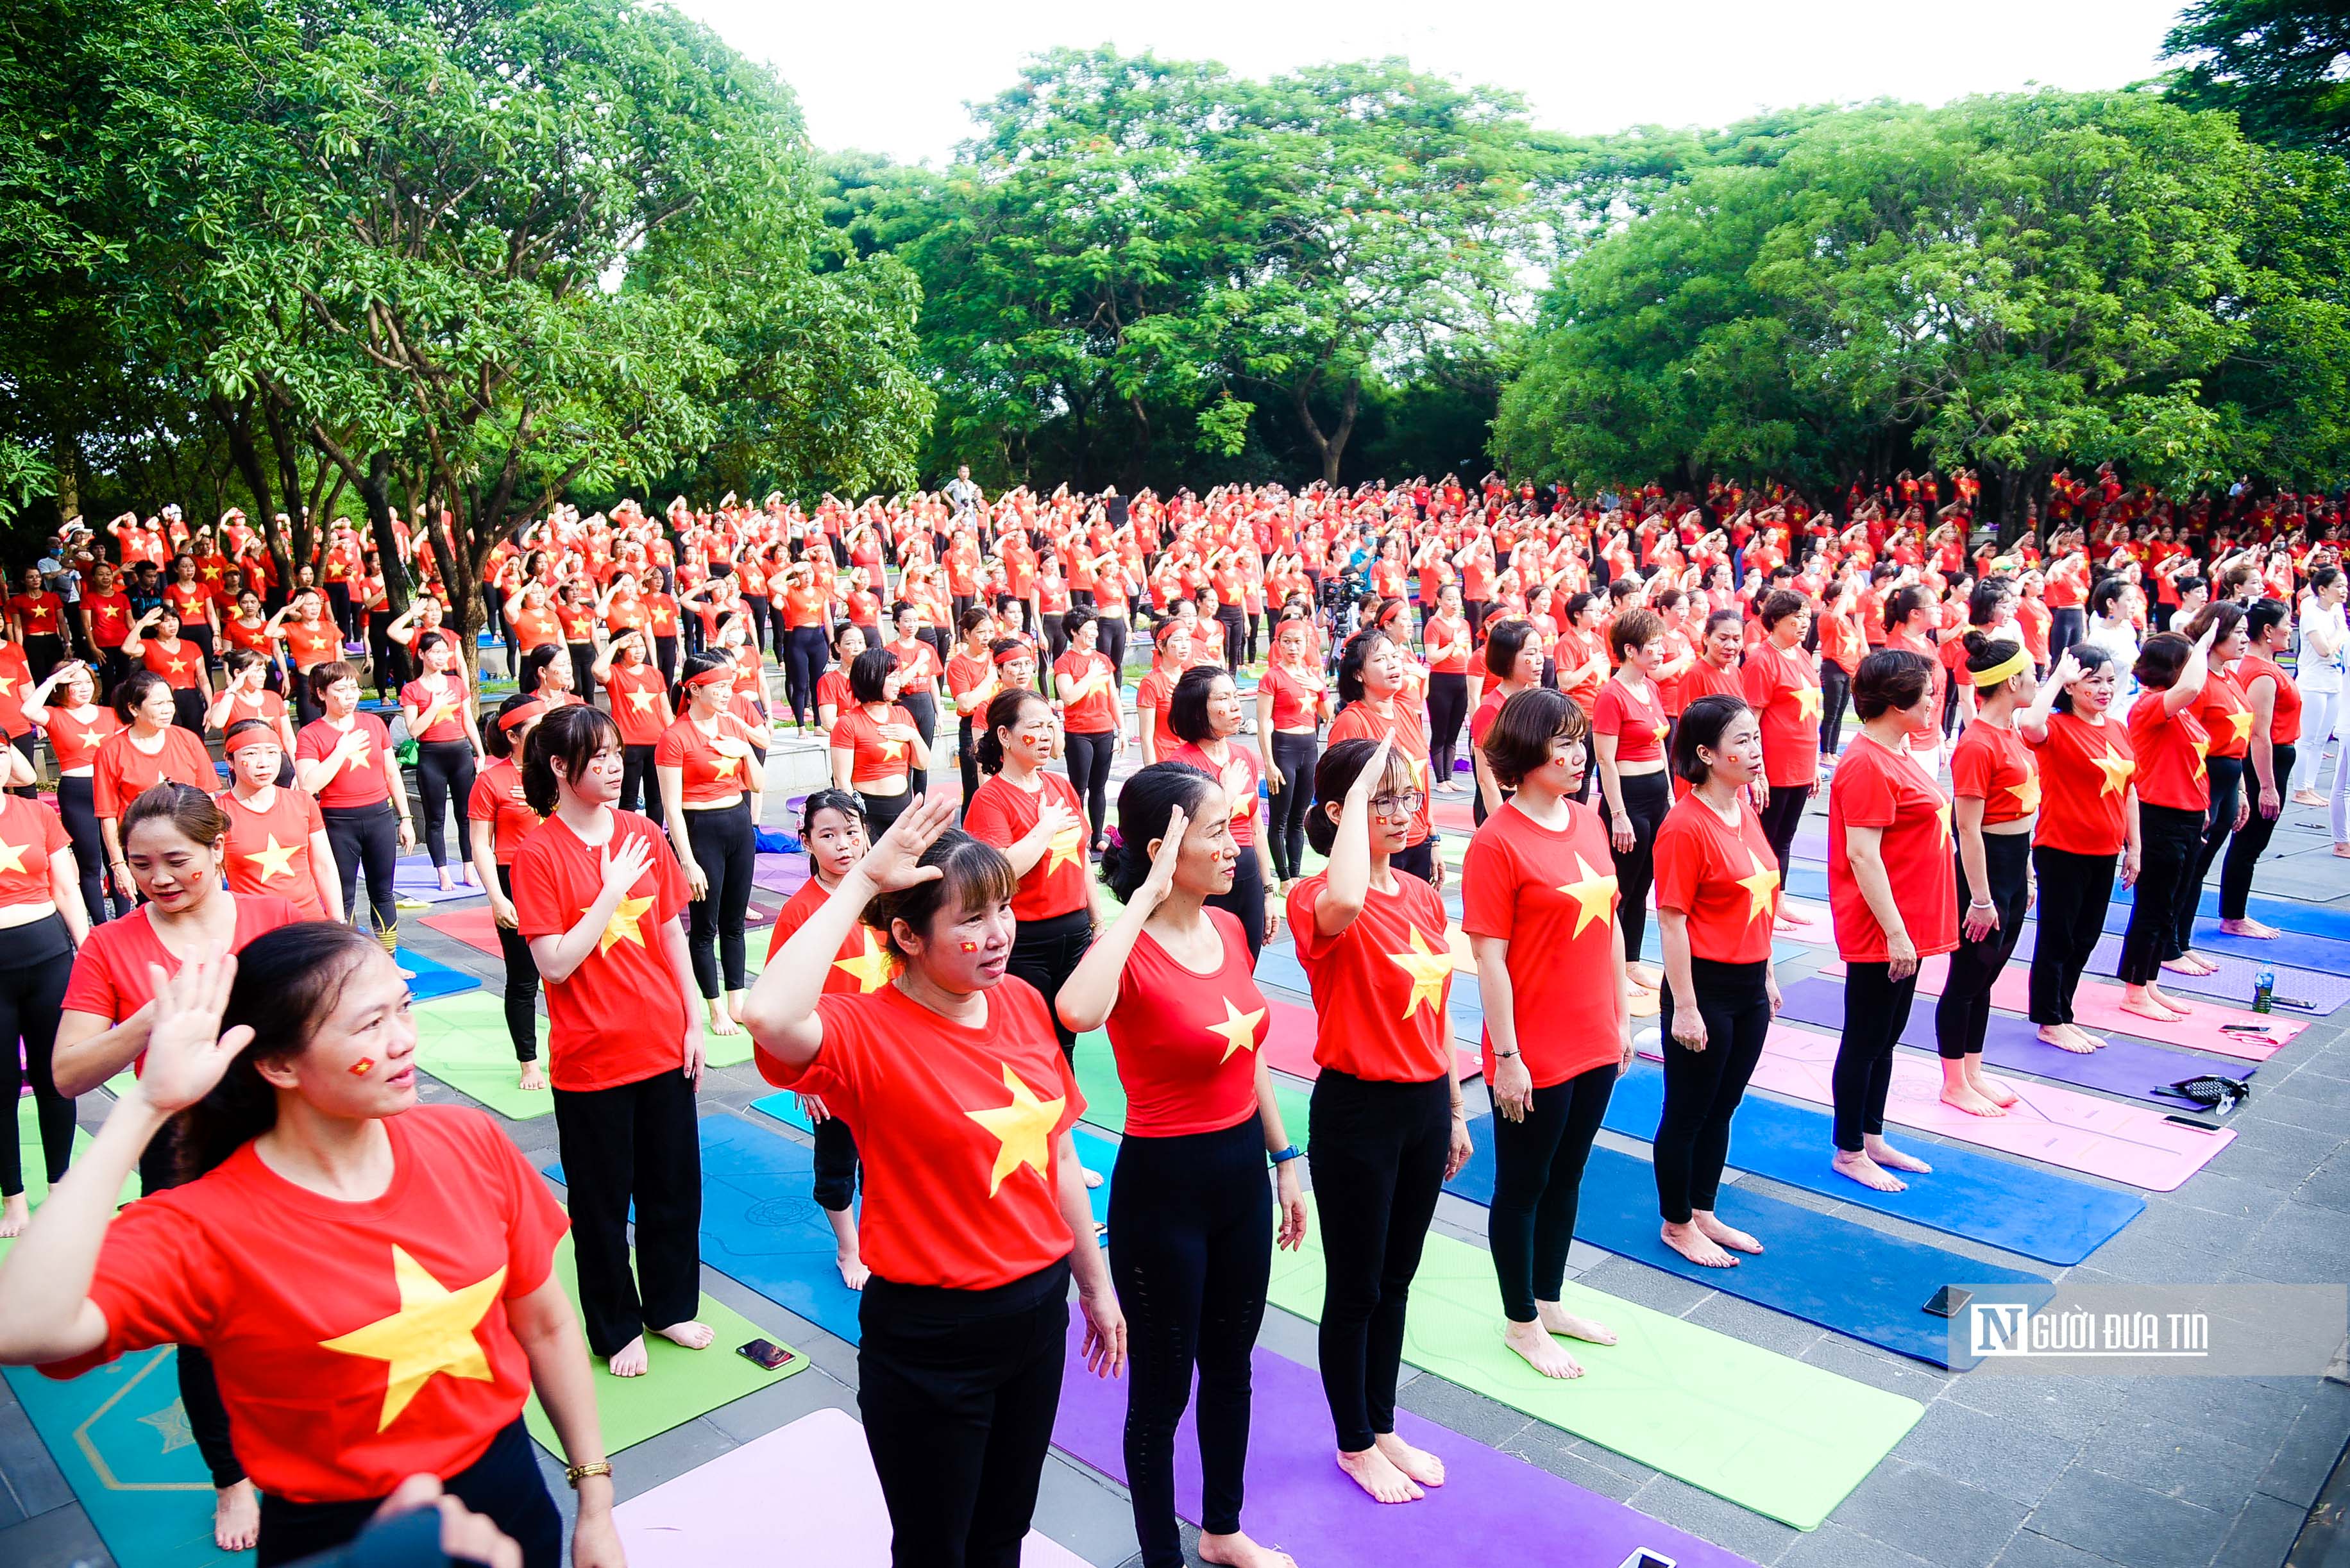 Dân sinh - Hà Nội: Hơn 1.000 người ở nhiều lứa tuổi tham gia đồng diễn Yoga